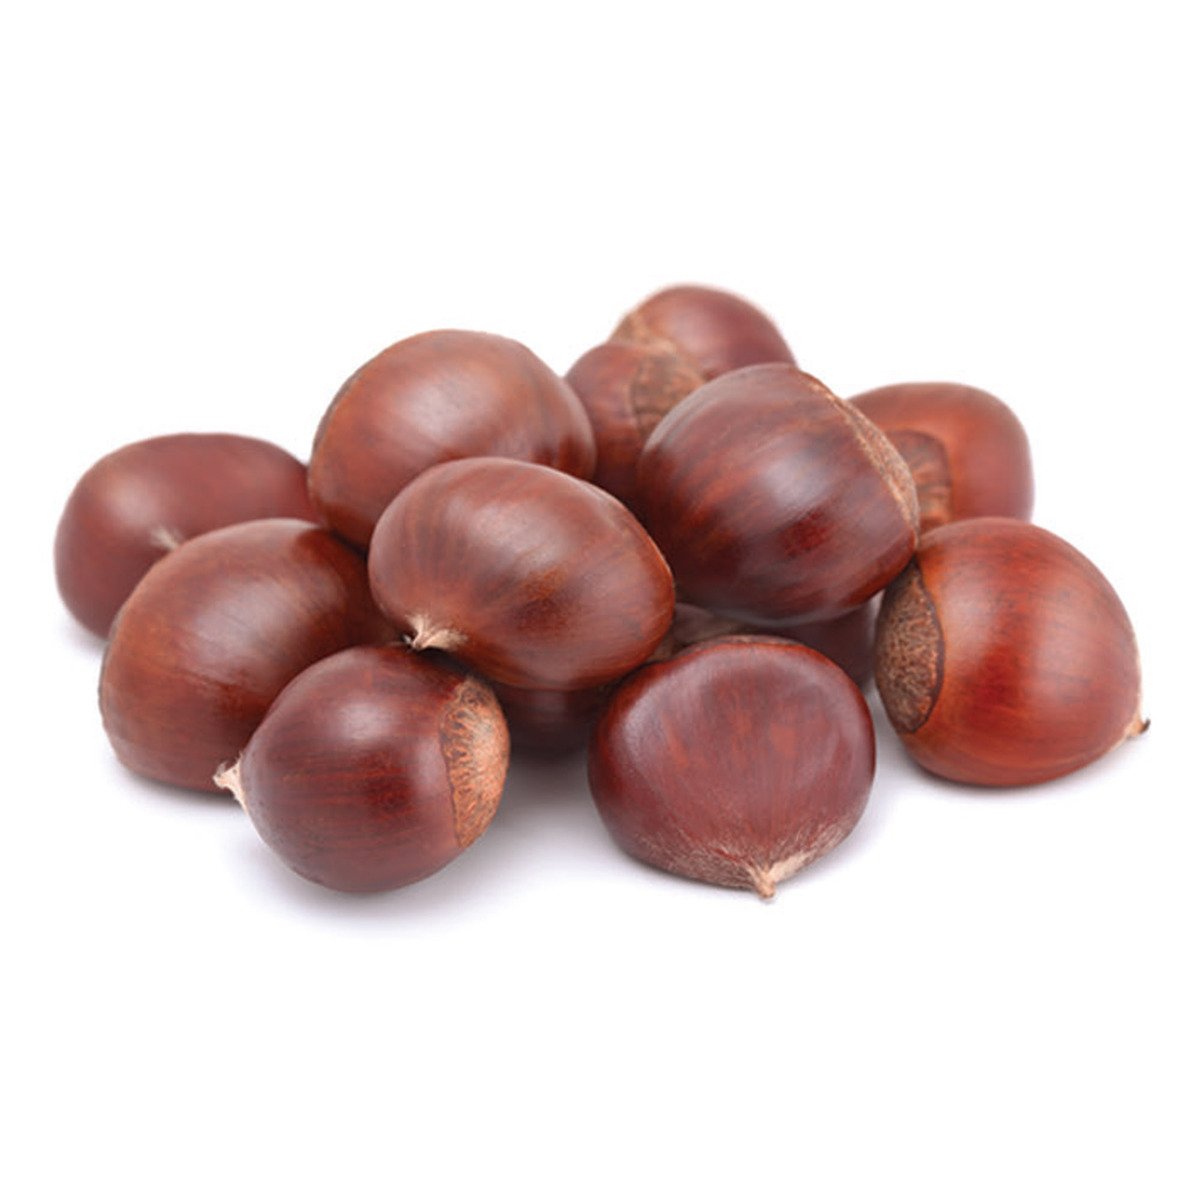 اشتري قم بشراء كستناء صيني 250 جم Online at Best Price من الموقع - من لولو هايبر ماركت Freshly Nuts في الامارات